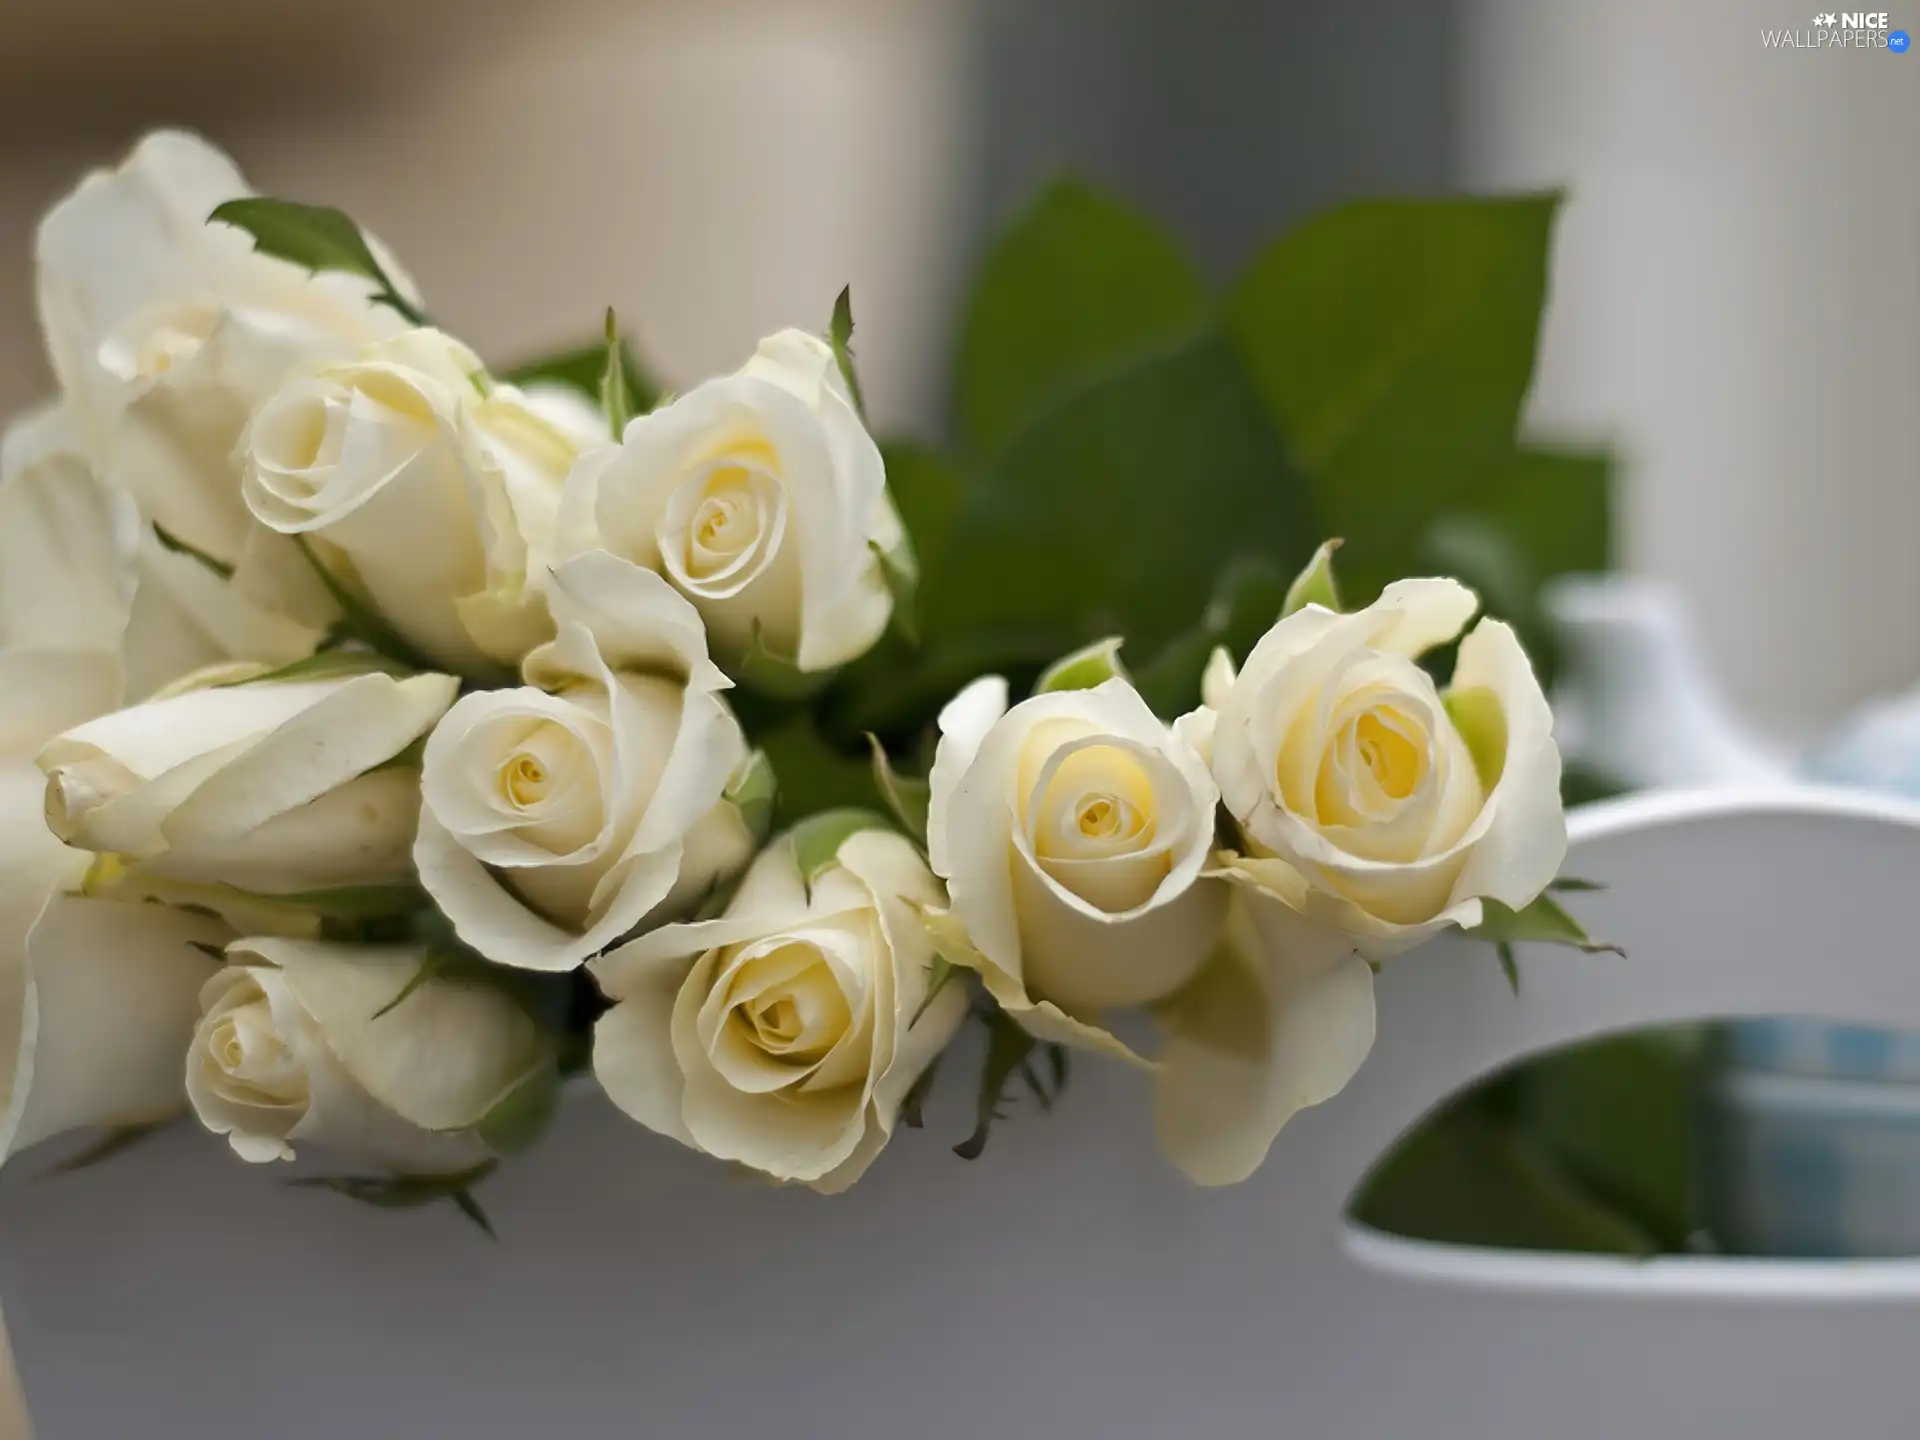 White Bed, White, roses